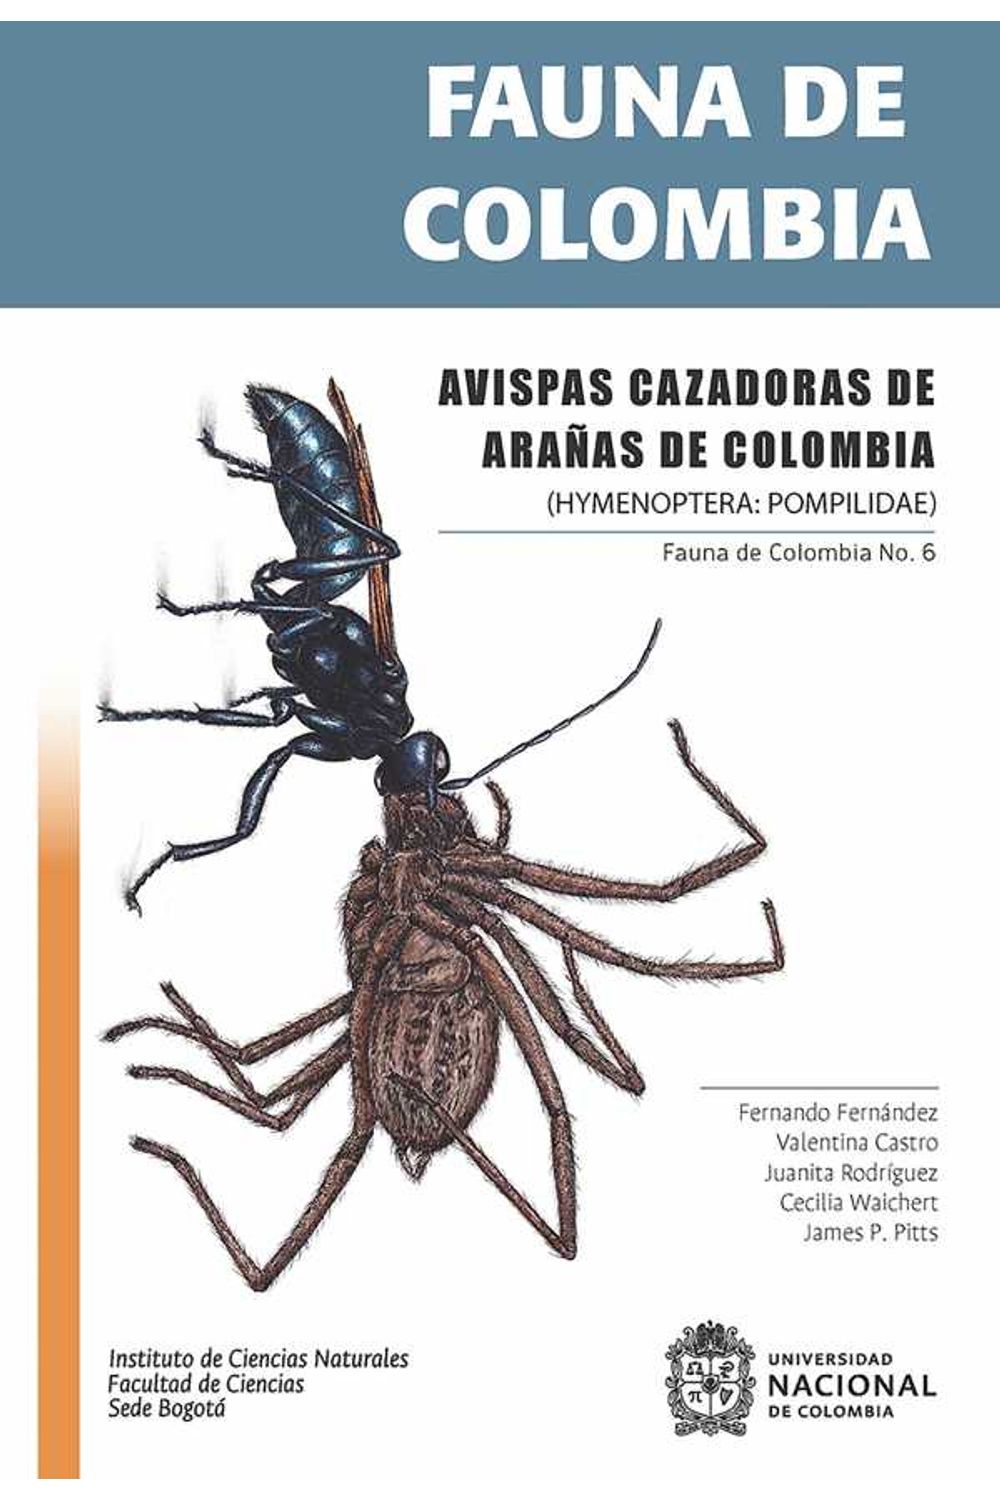 bw-fauna-de-colombia-avispas-cazadoras-de-arantildeas-de-colombia-universidad-nacional-de-colombia-9789587833102